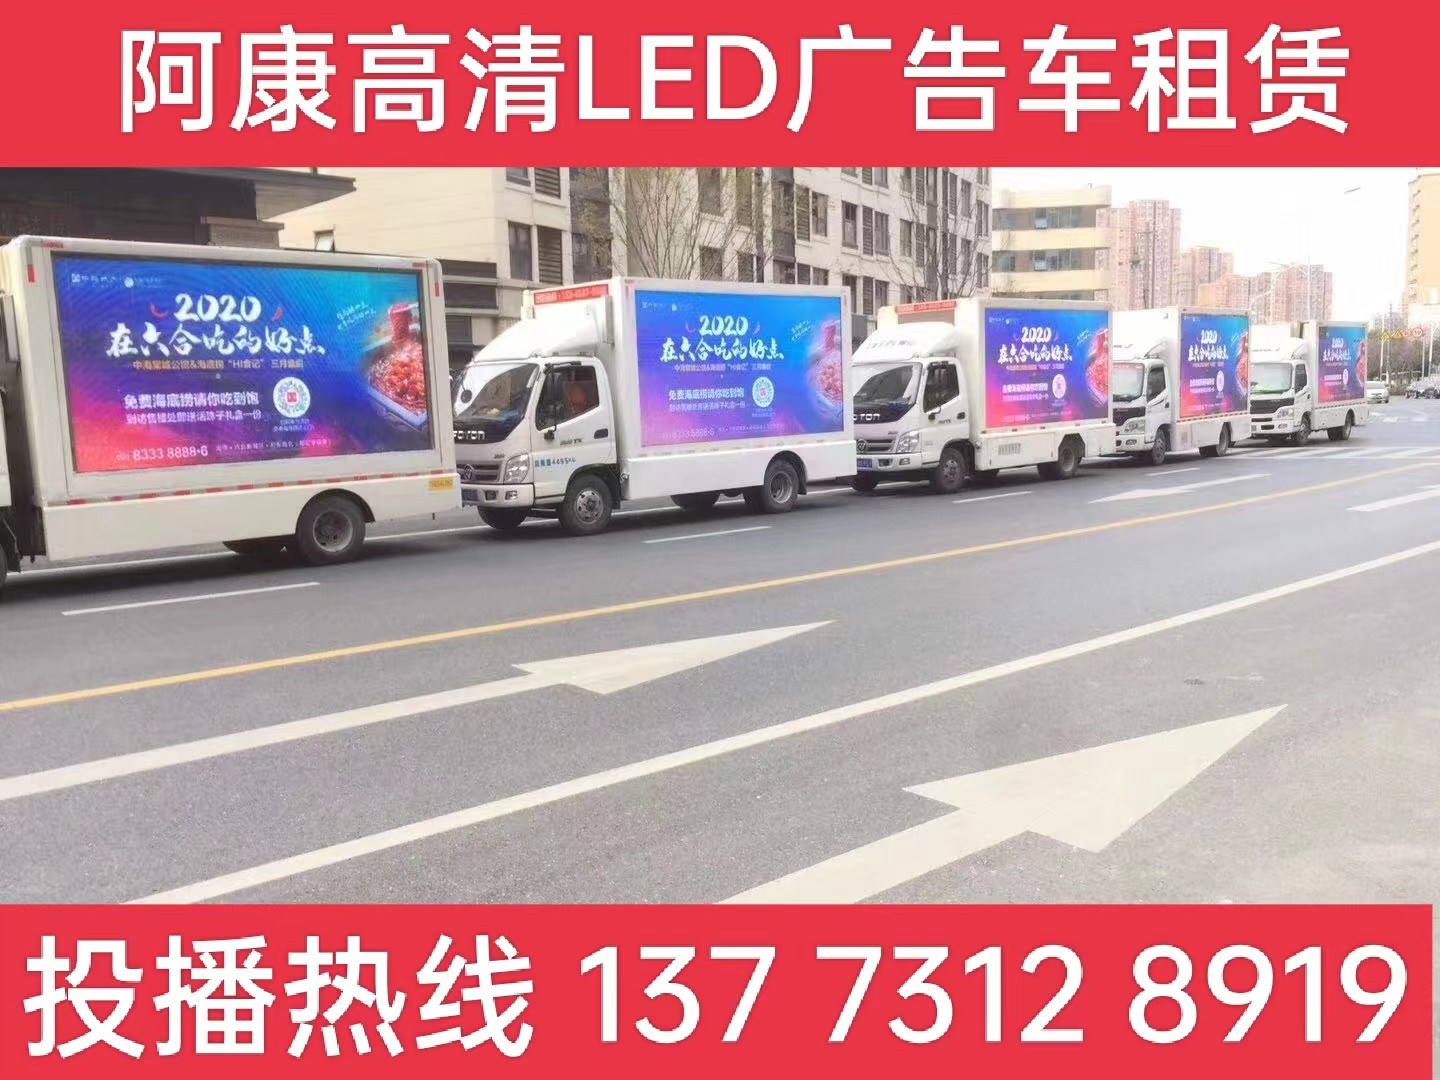 栖霞区宣传车出租-海底捞LED广告